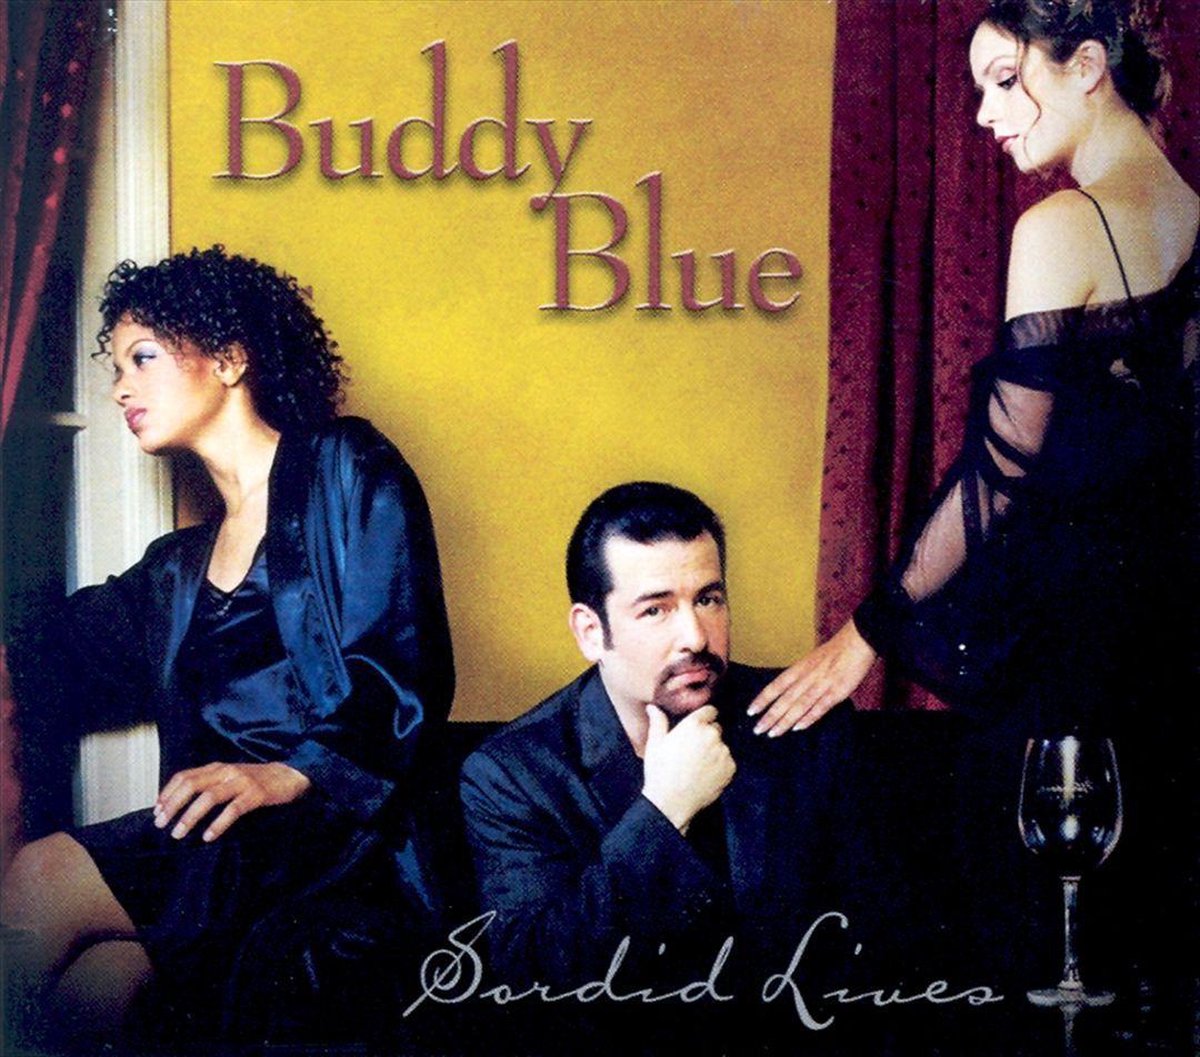 Sordid Lives - BUDDY BLUE